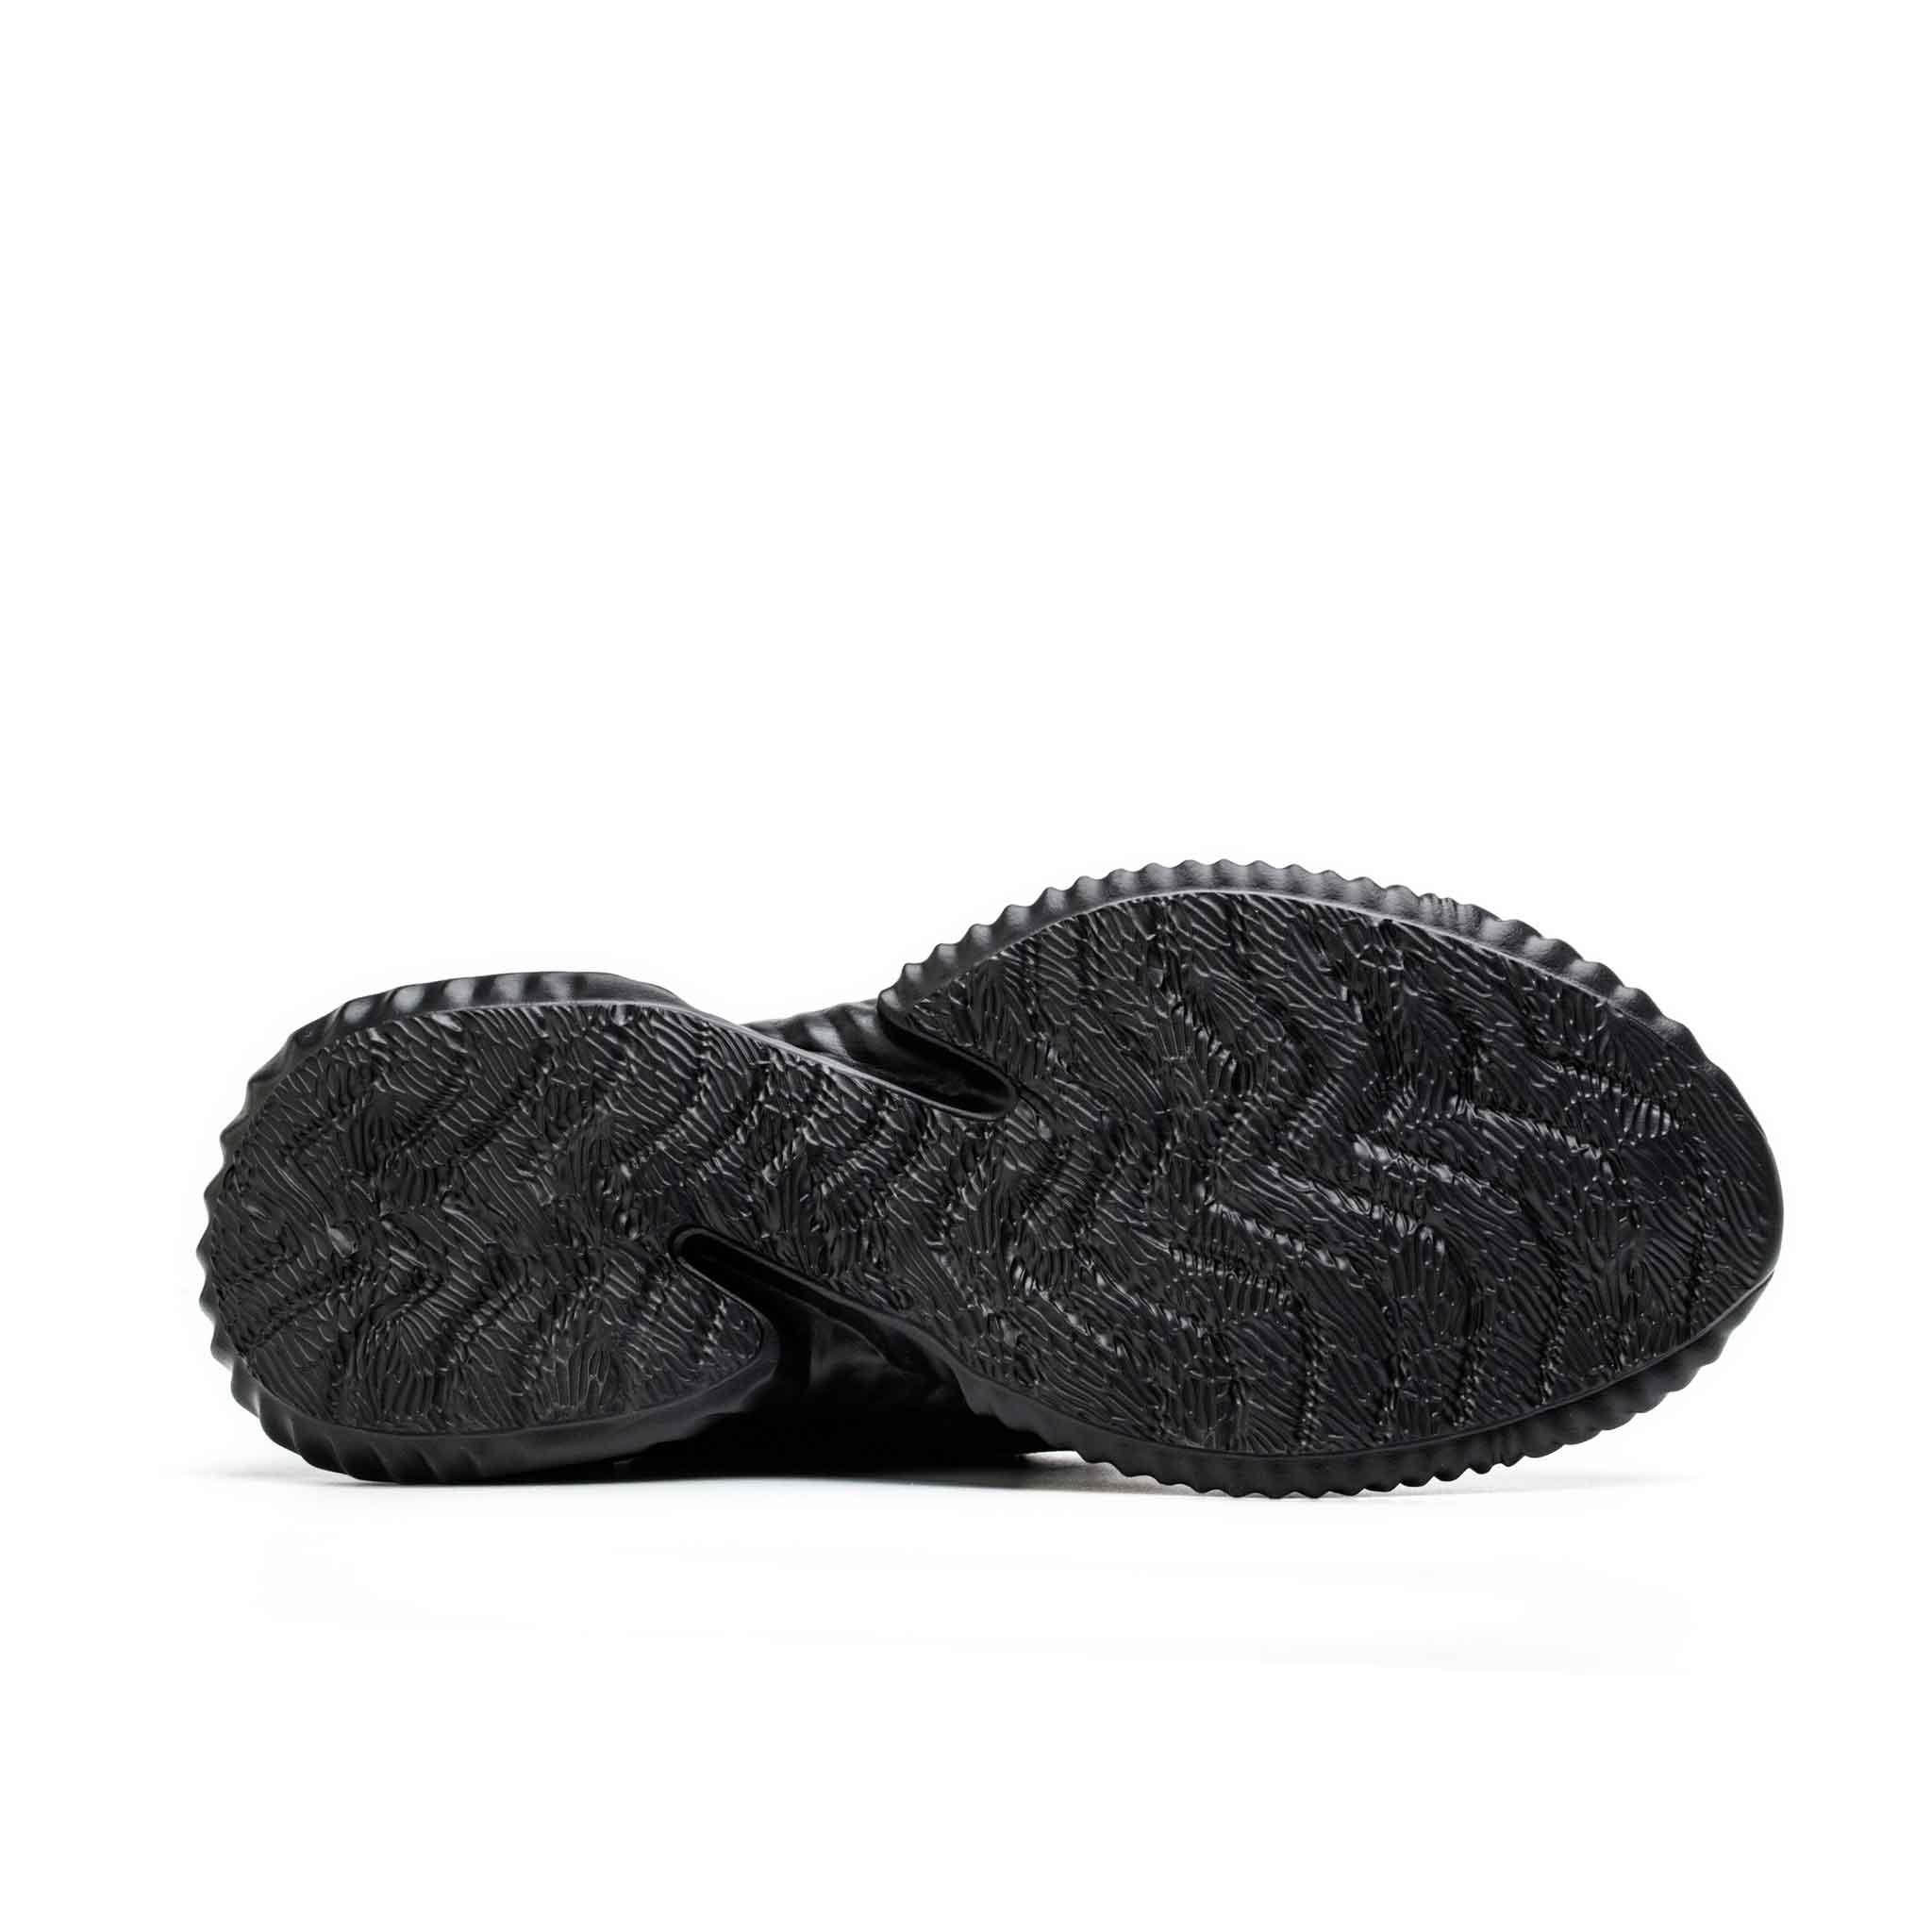 Men's Steel Toe Sneakers - Slip Resistant | B226